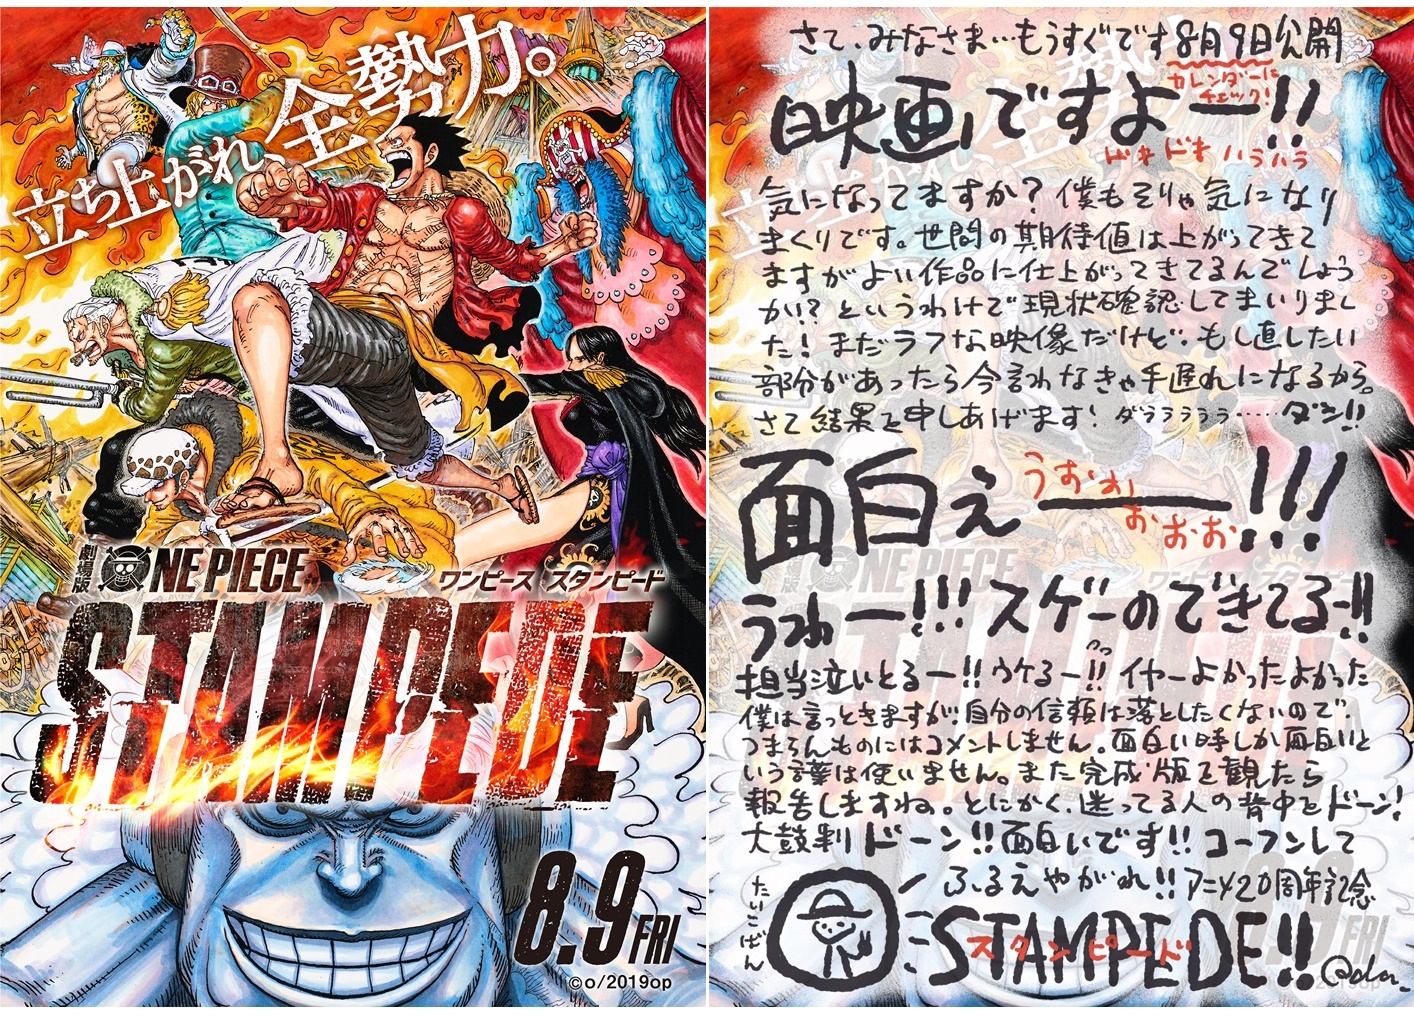 劇場版 One Piece 原作者 尾田栄一郎より直筆コメント到着 アニメイトタイムズ